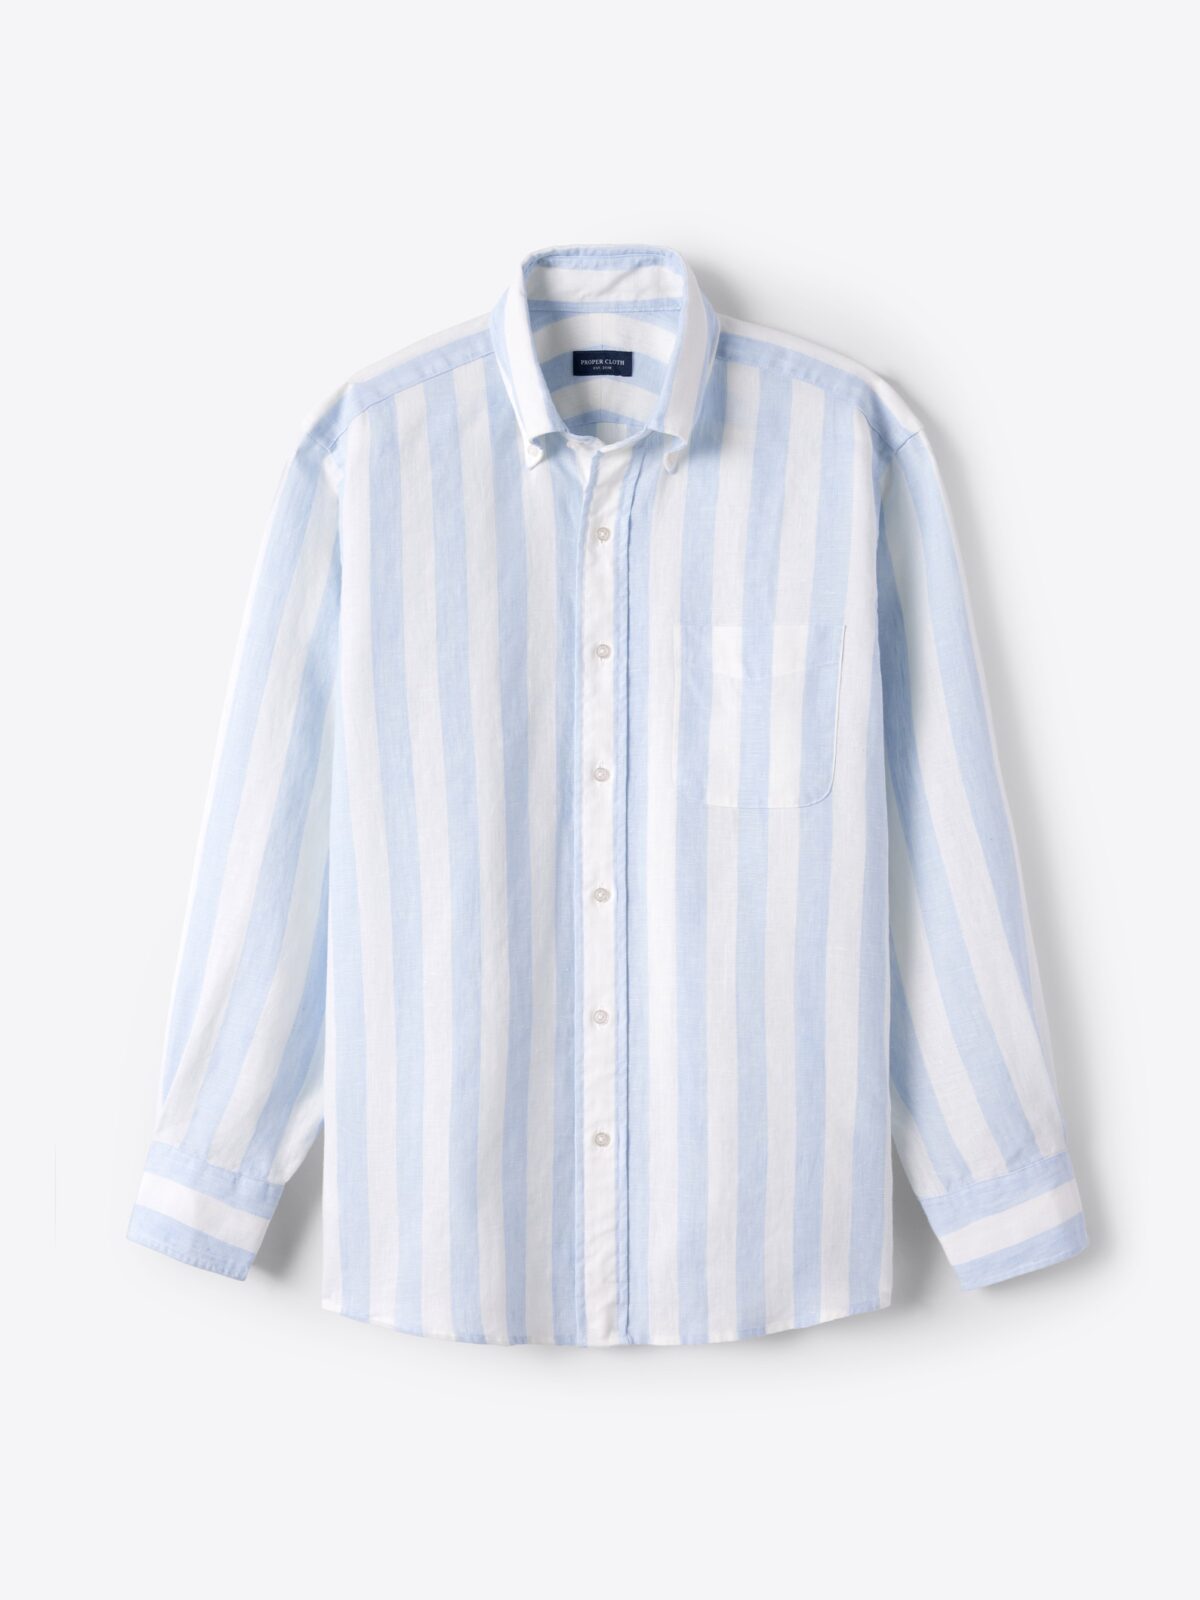 Portuguese Blue Stripe Seersucker Shirt by Proper Cloth